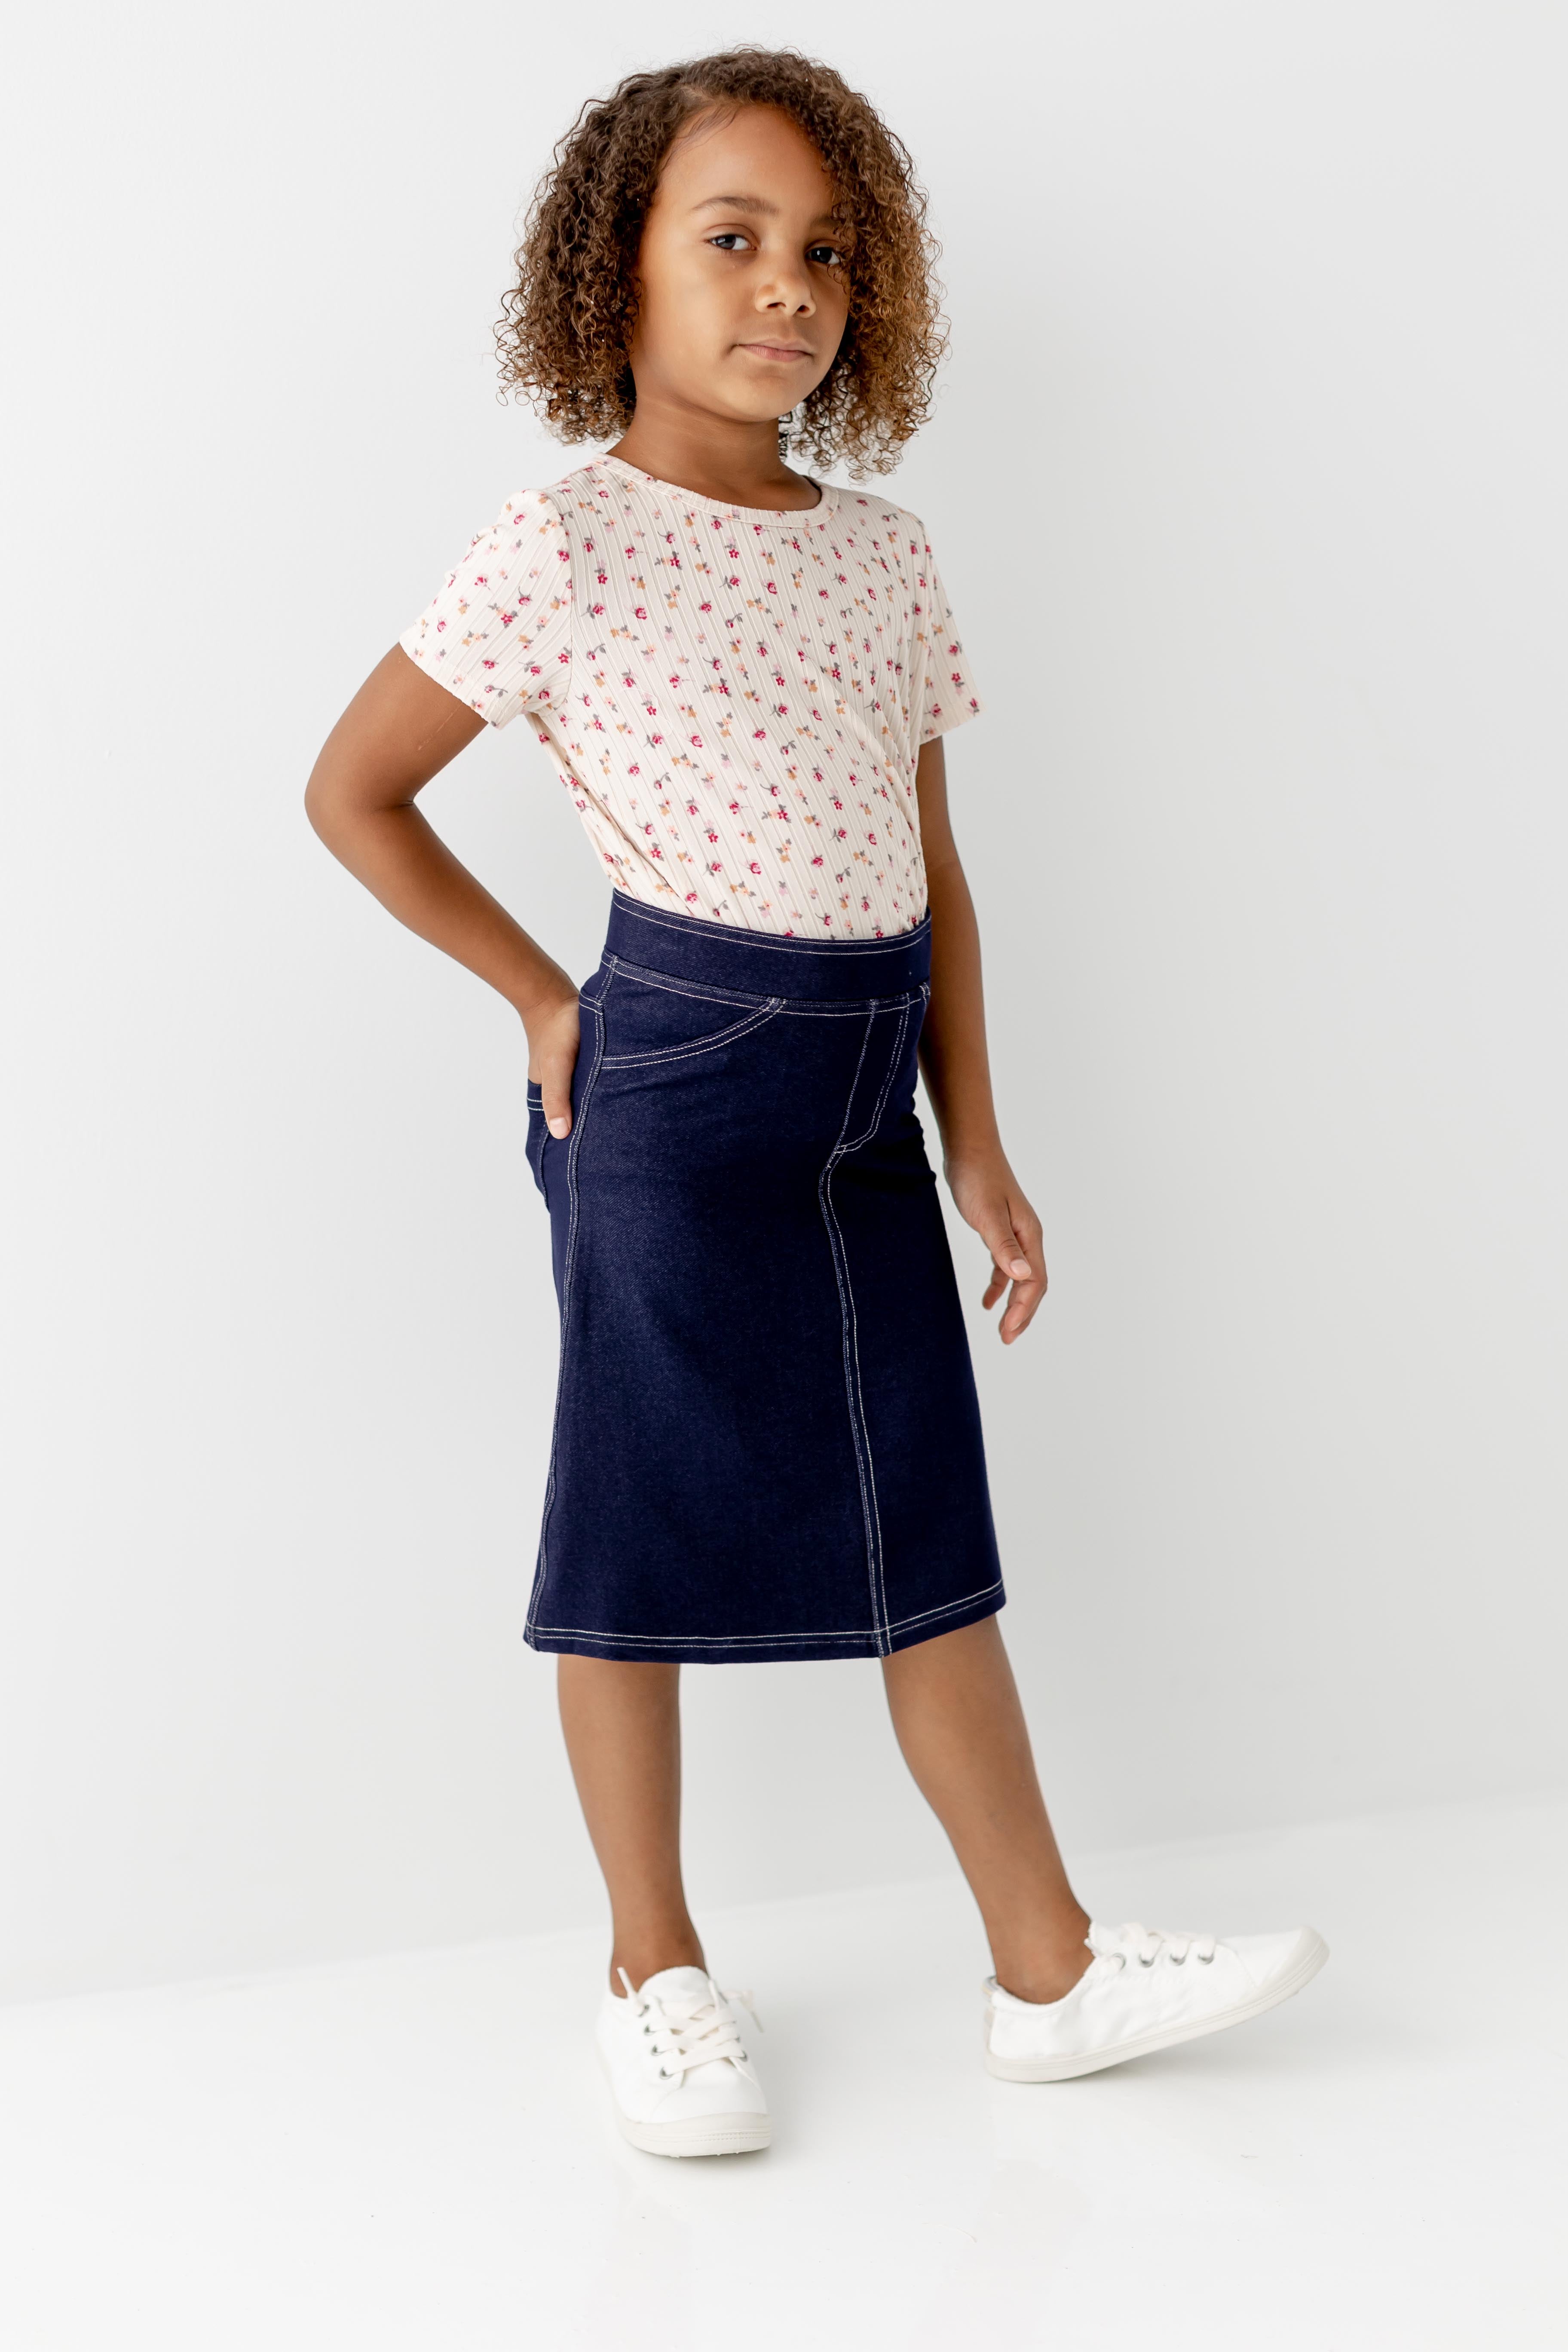 'Piper' Girl Knit Denim Skirt in Navy – The Main Street Exchange